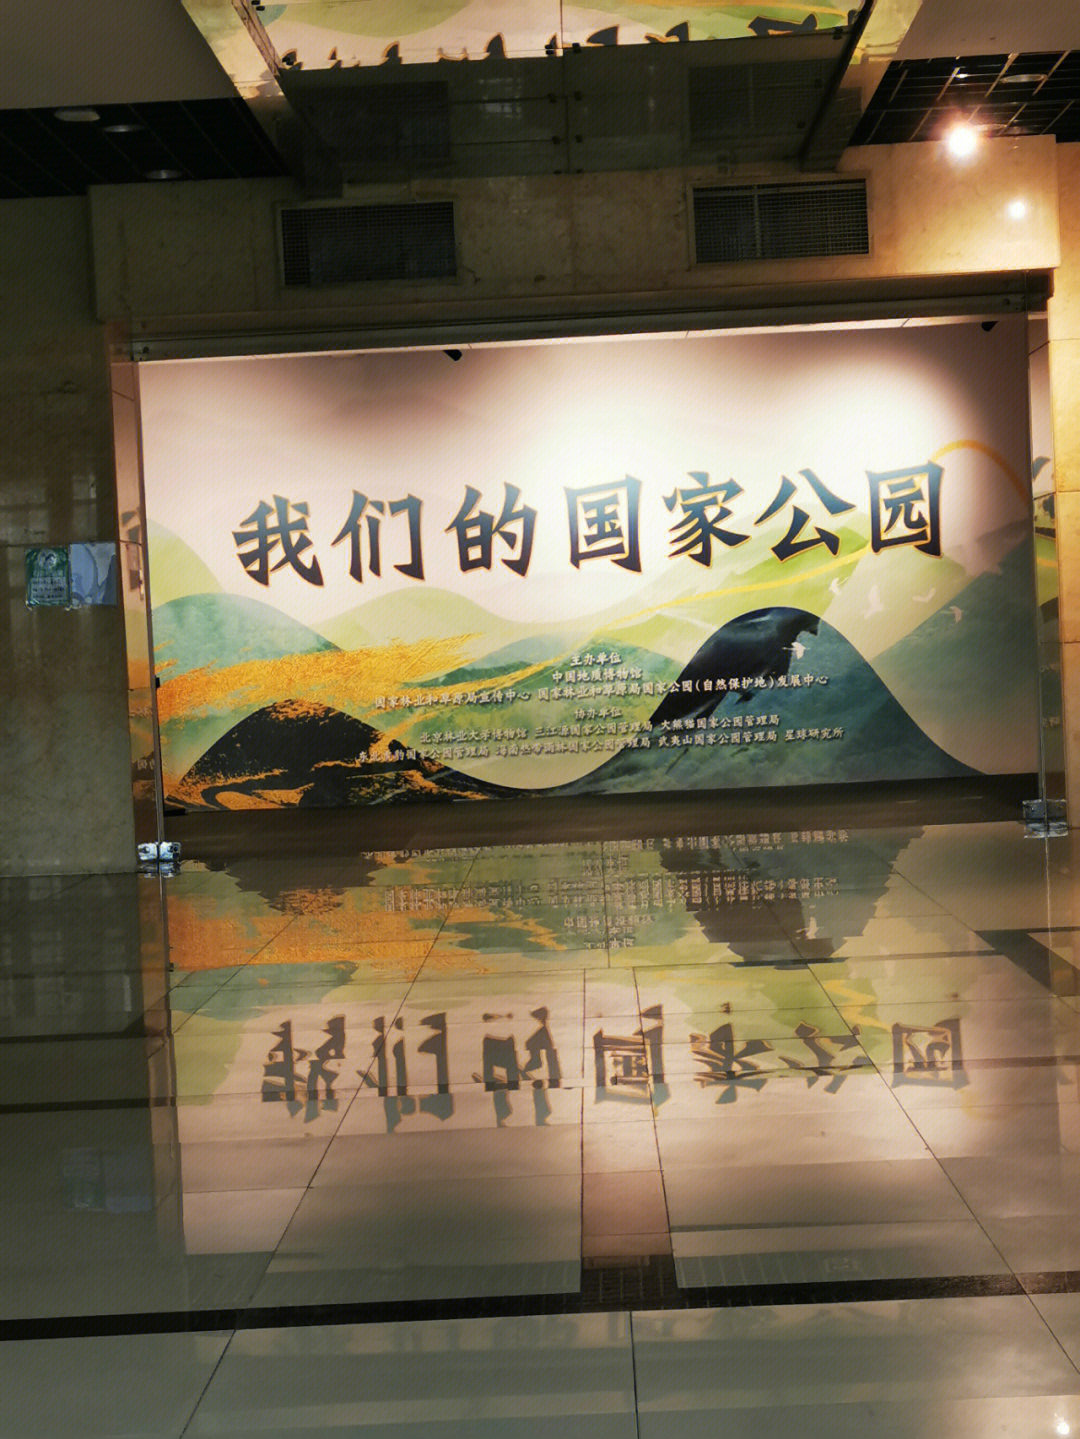 中国地质博物馆,在西四,地铁公交都挺方便